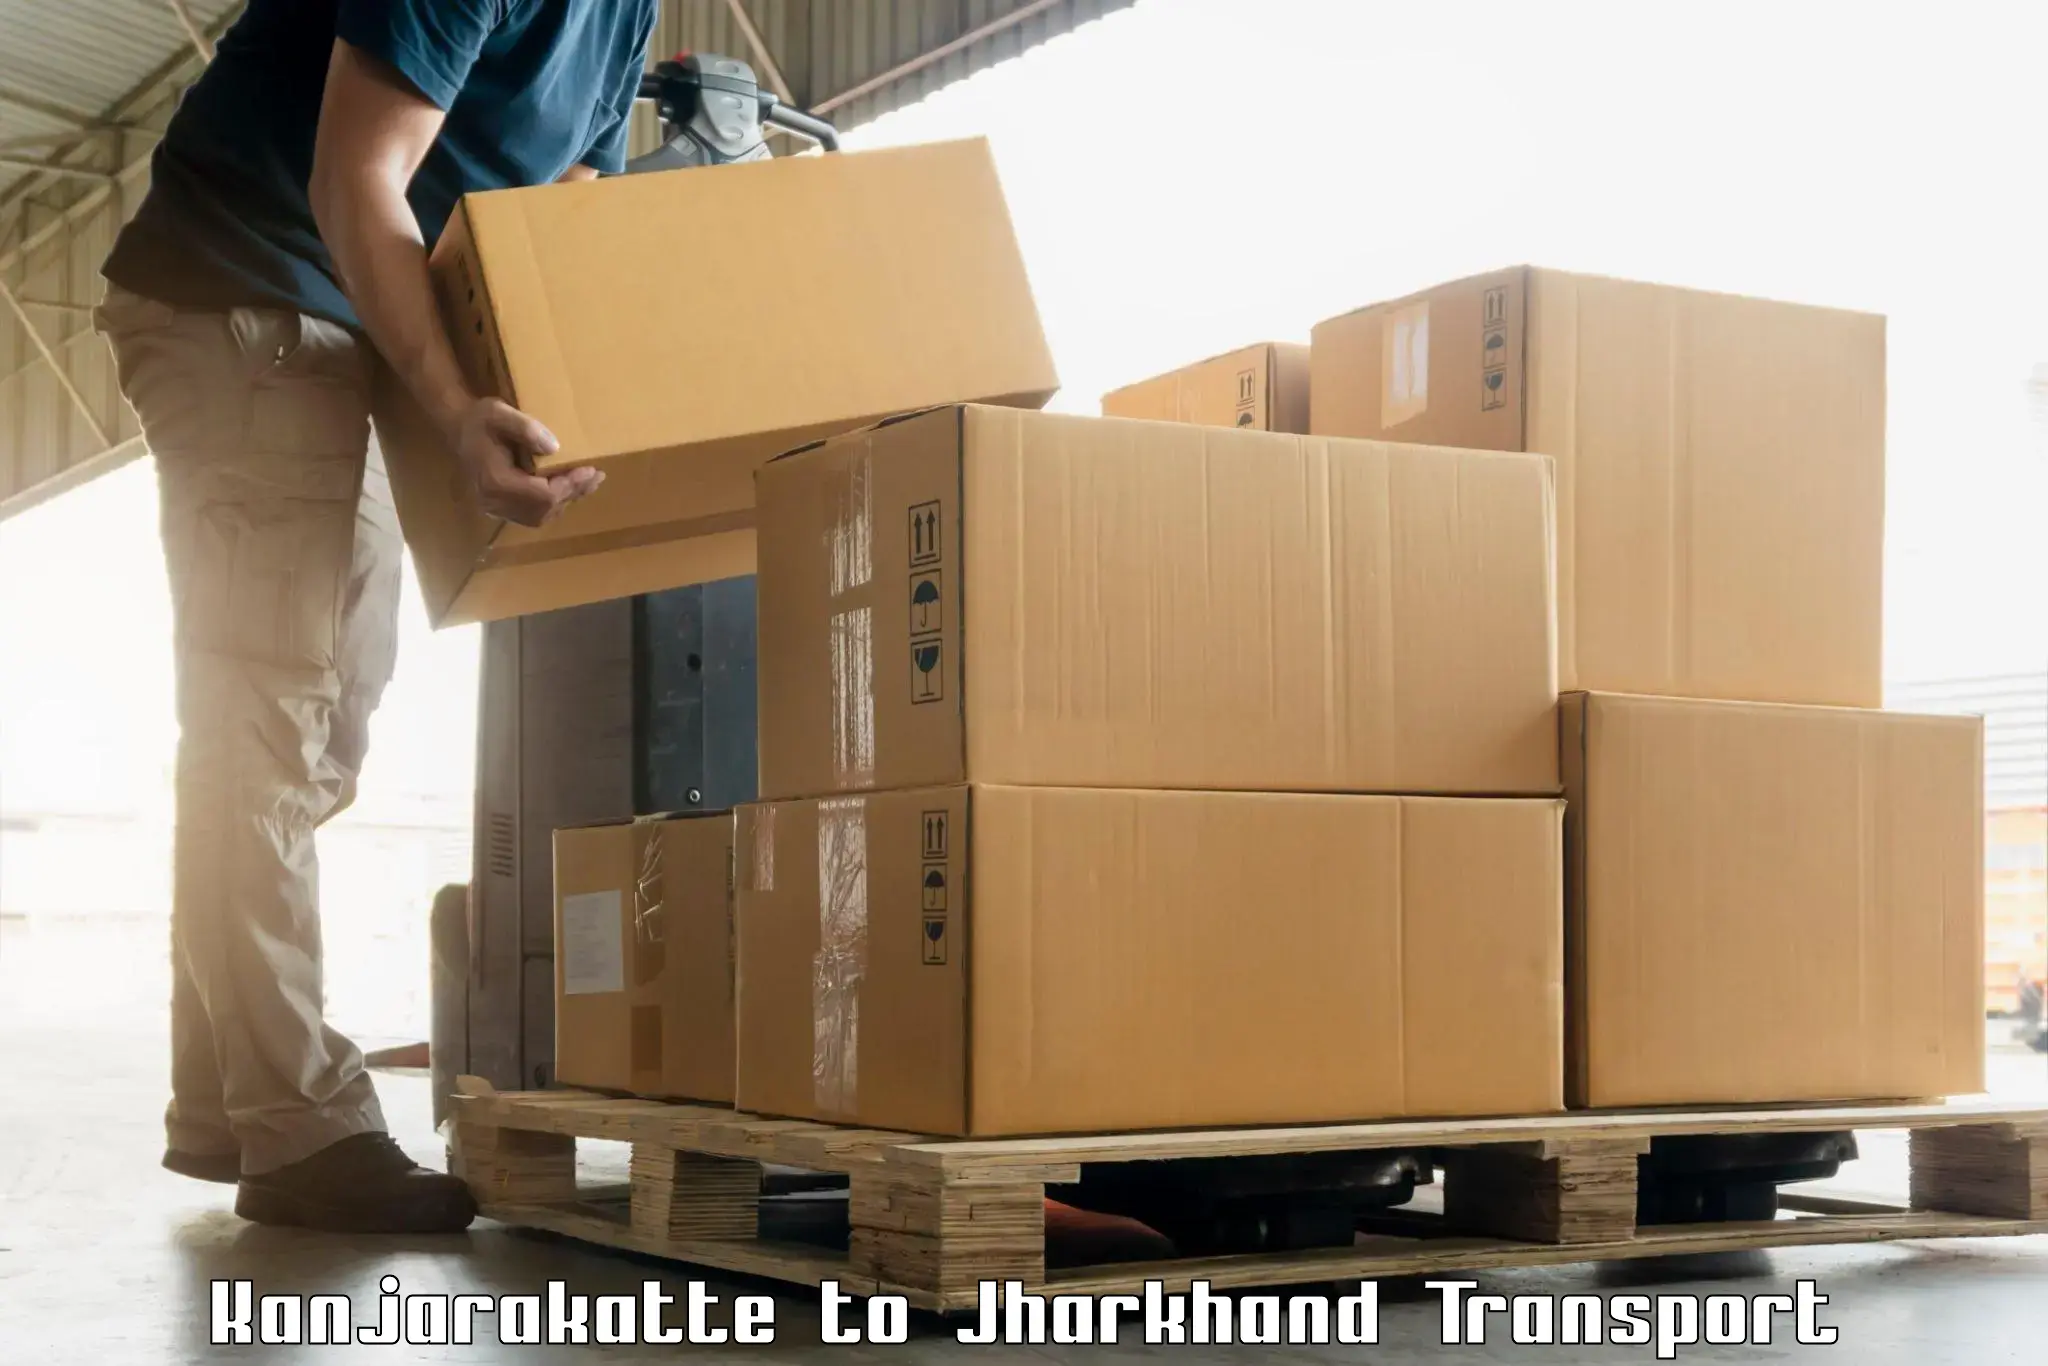 Cargo transport services Kanjarakatte to Hazaribagh